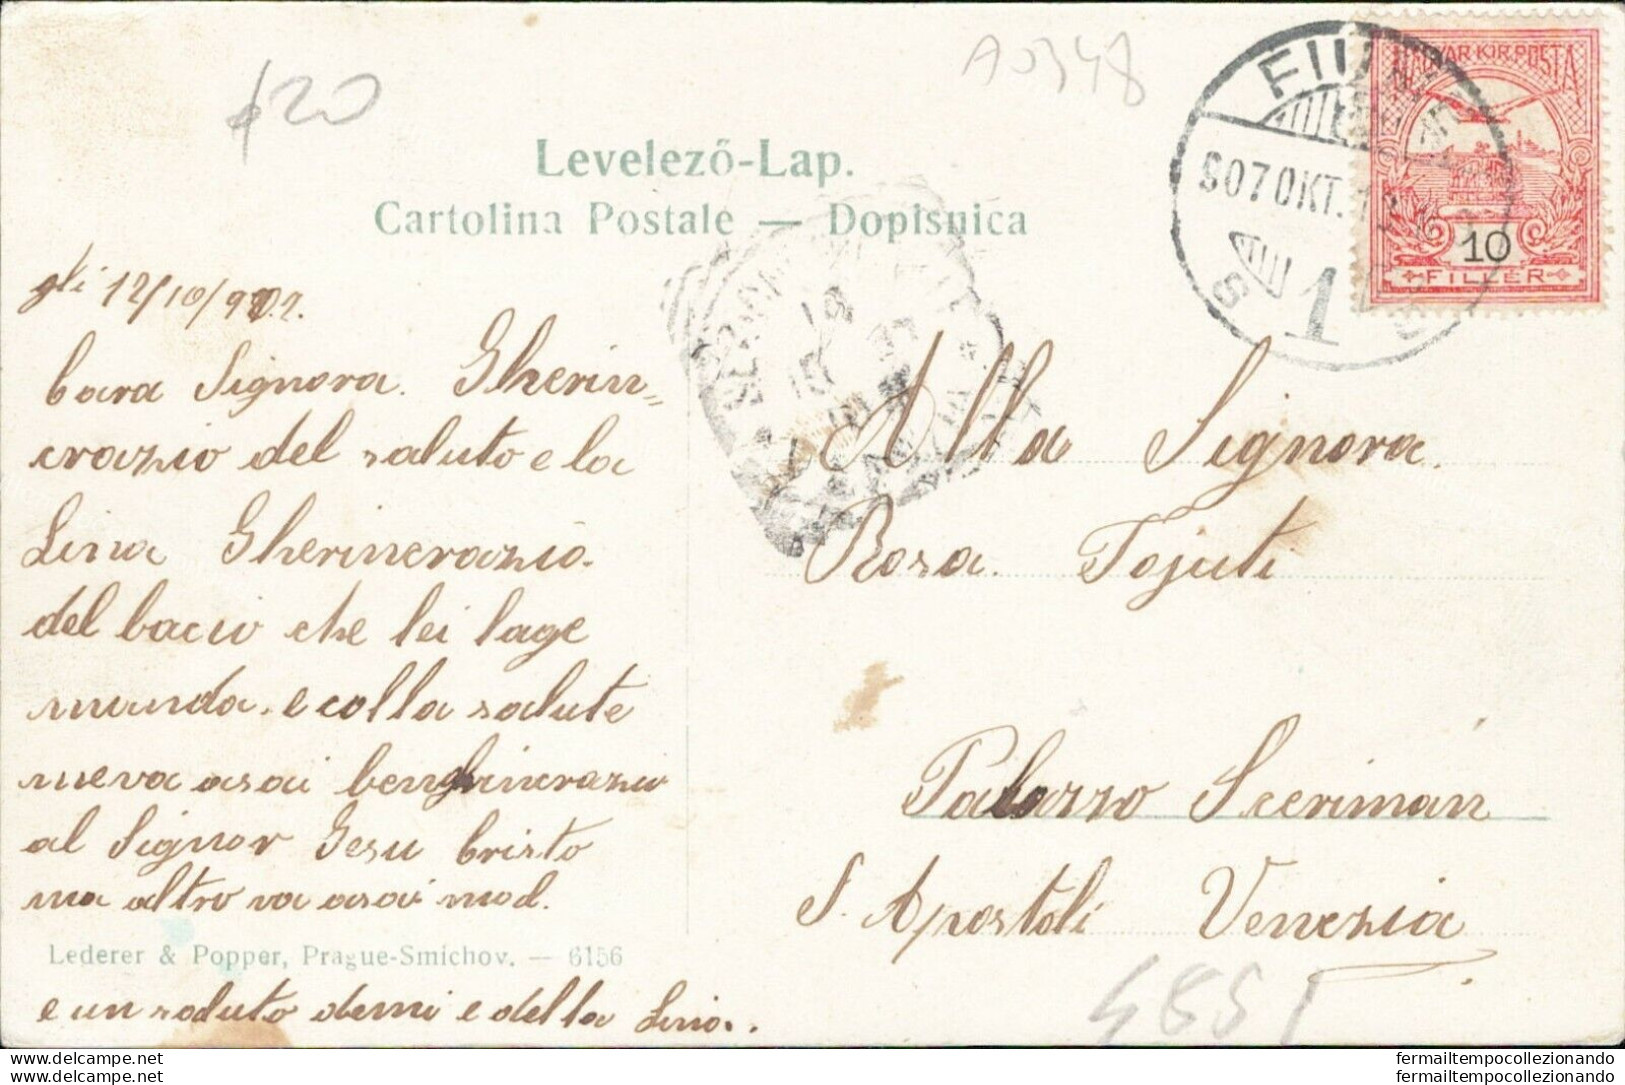 Ao348 Cartolina Fiume Via Adamich 1907 Croazia - Autres & Non Classés